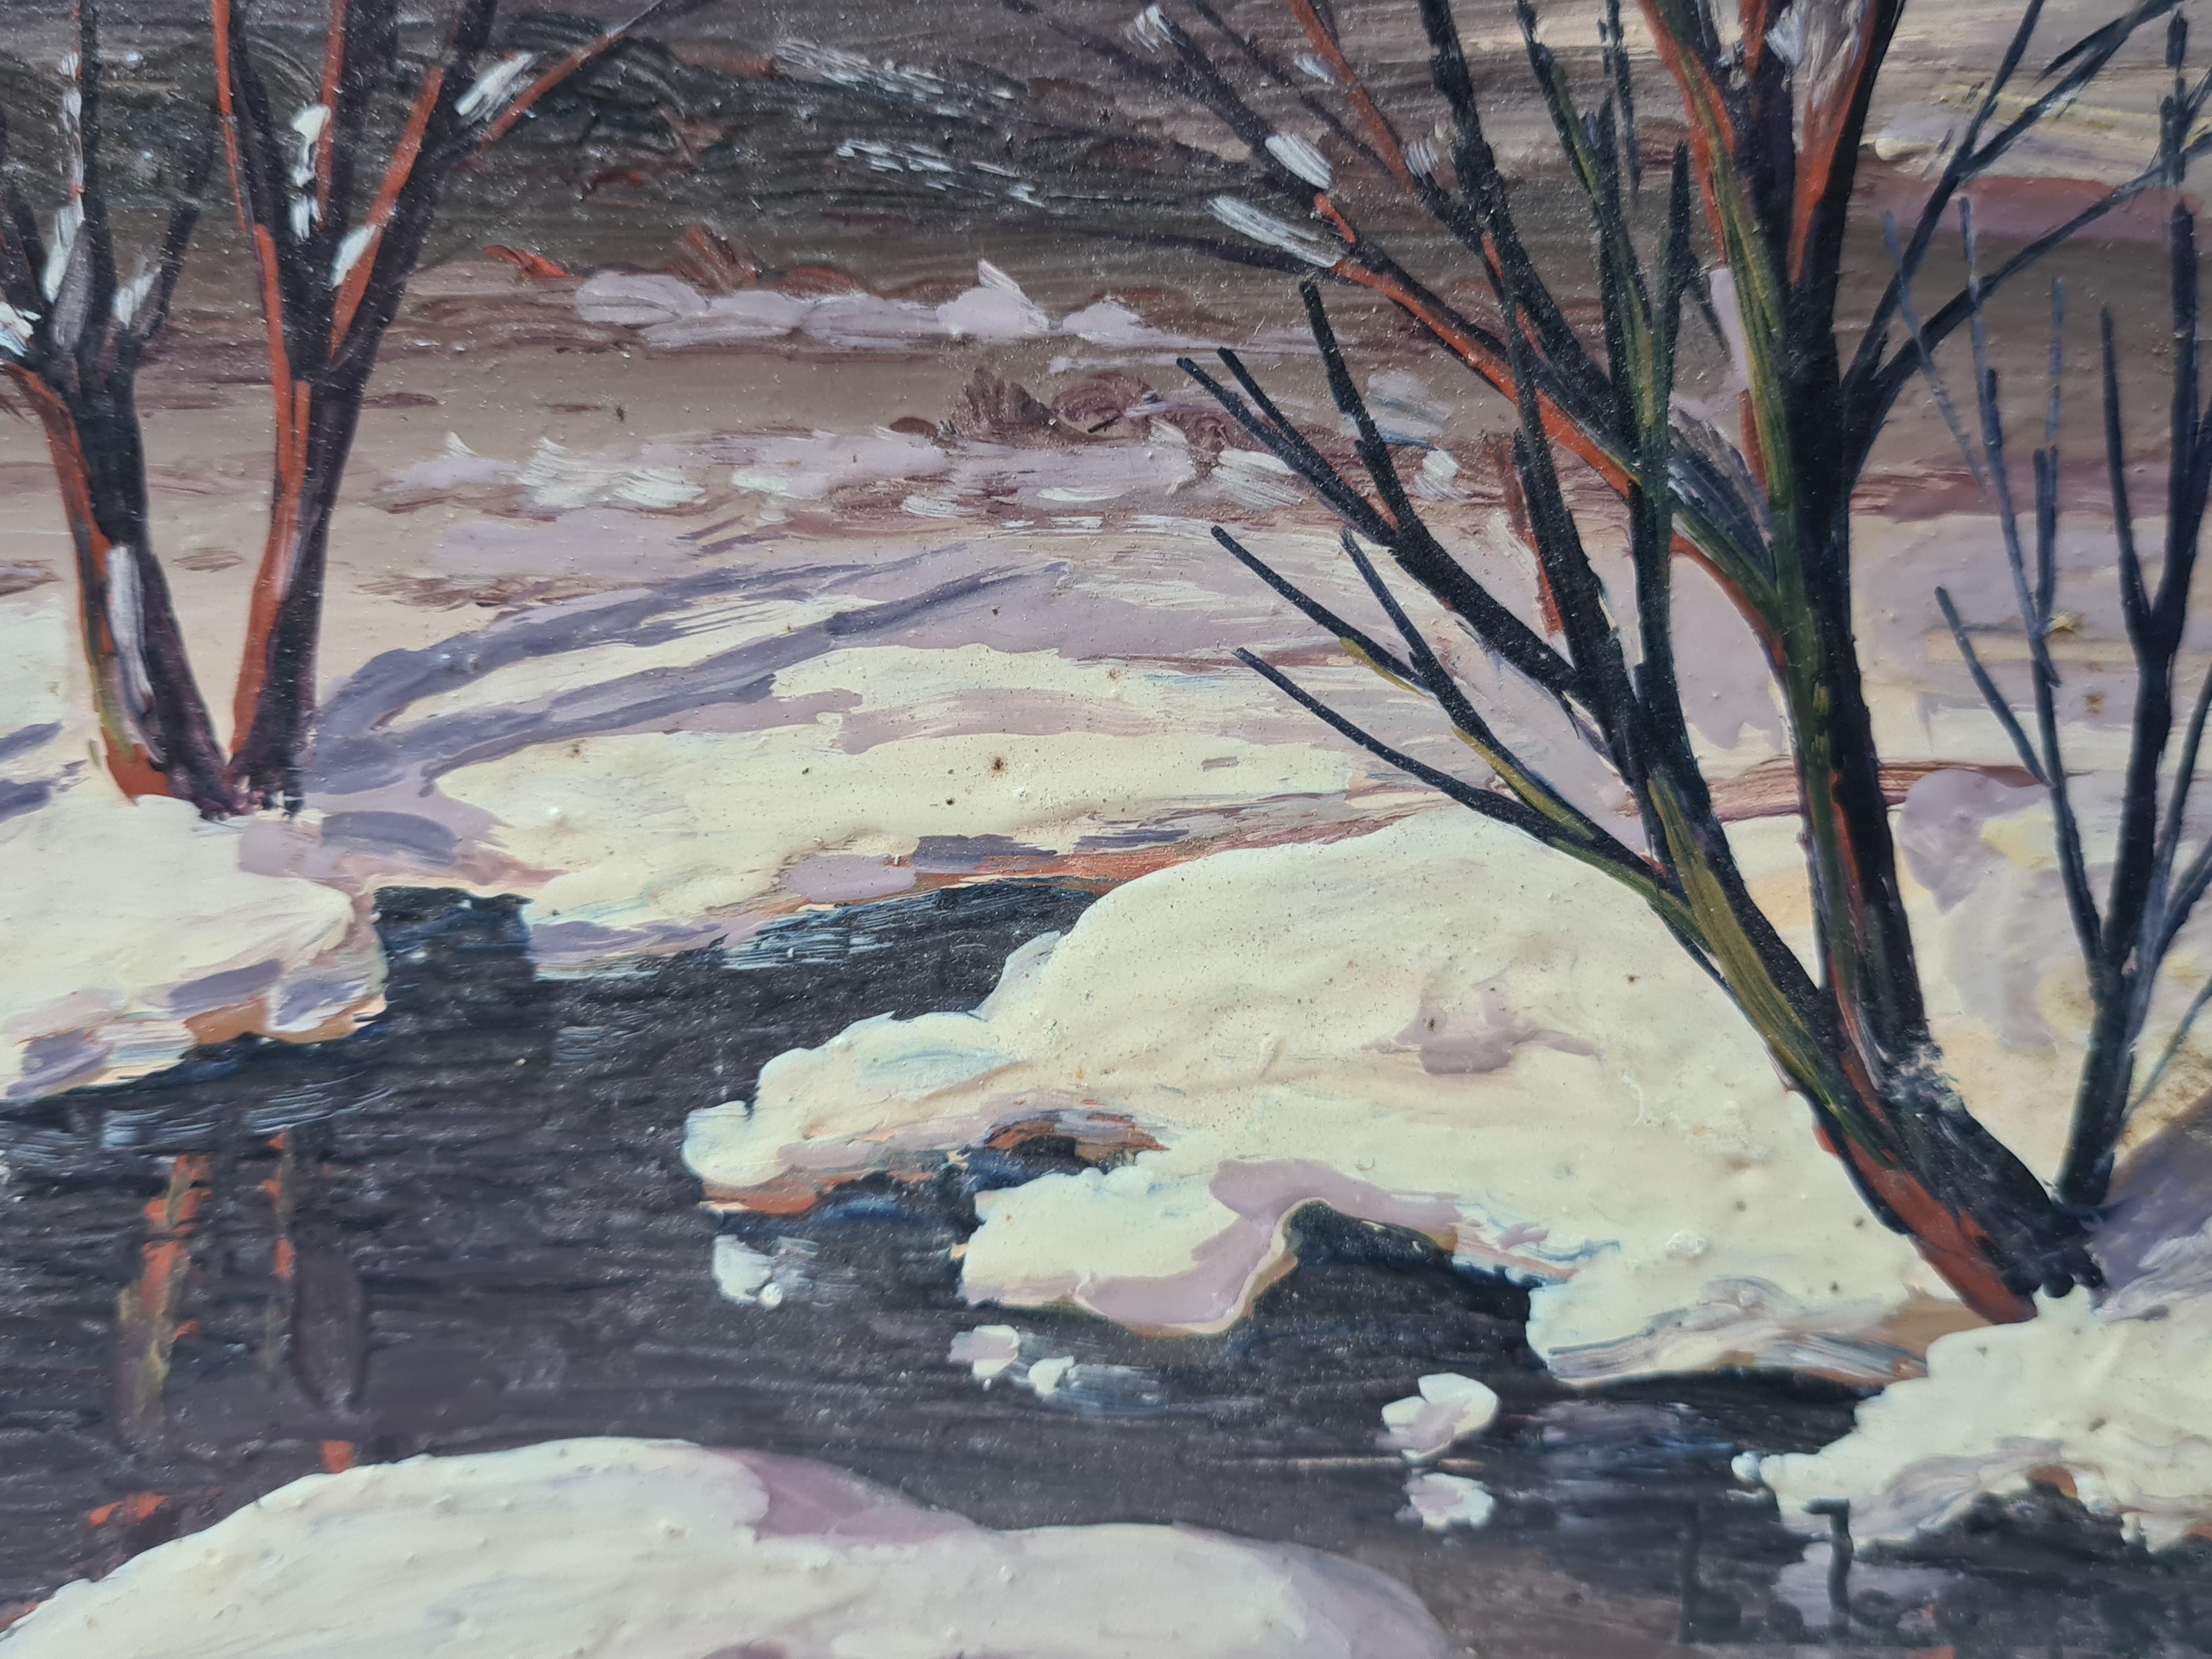 Huile sur panneau représentant une scène de neige hivernale par Boggio. Le tableau est signé en bas à droite.

Une charmante vue d'une scène de neige, une rivière coulant le long d'une rive lourdement enneigée.